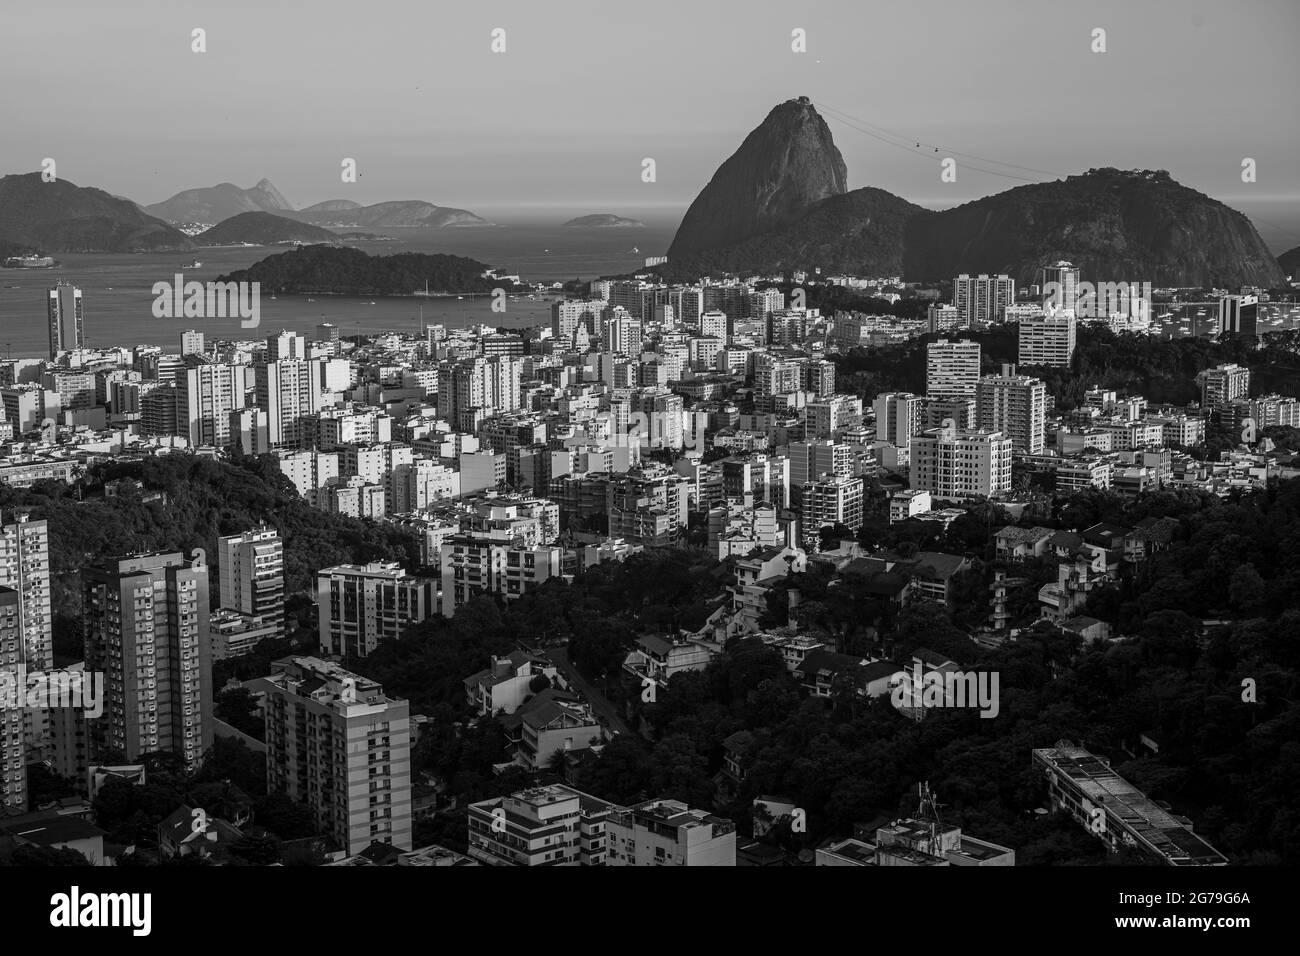 Sugarloaf Mountain and Botafogo in Rio de Janeiro, Brazil Stock Photo